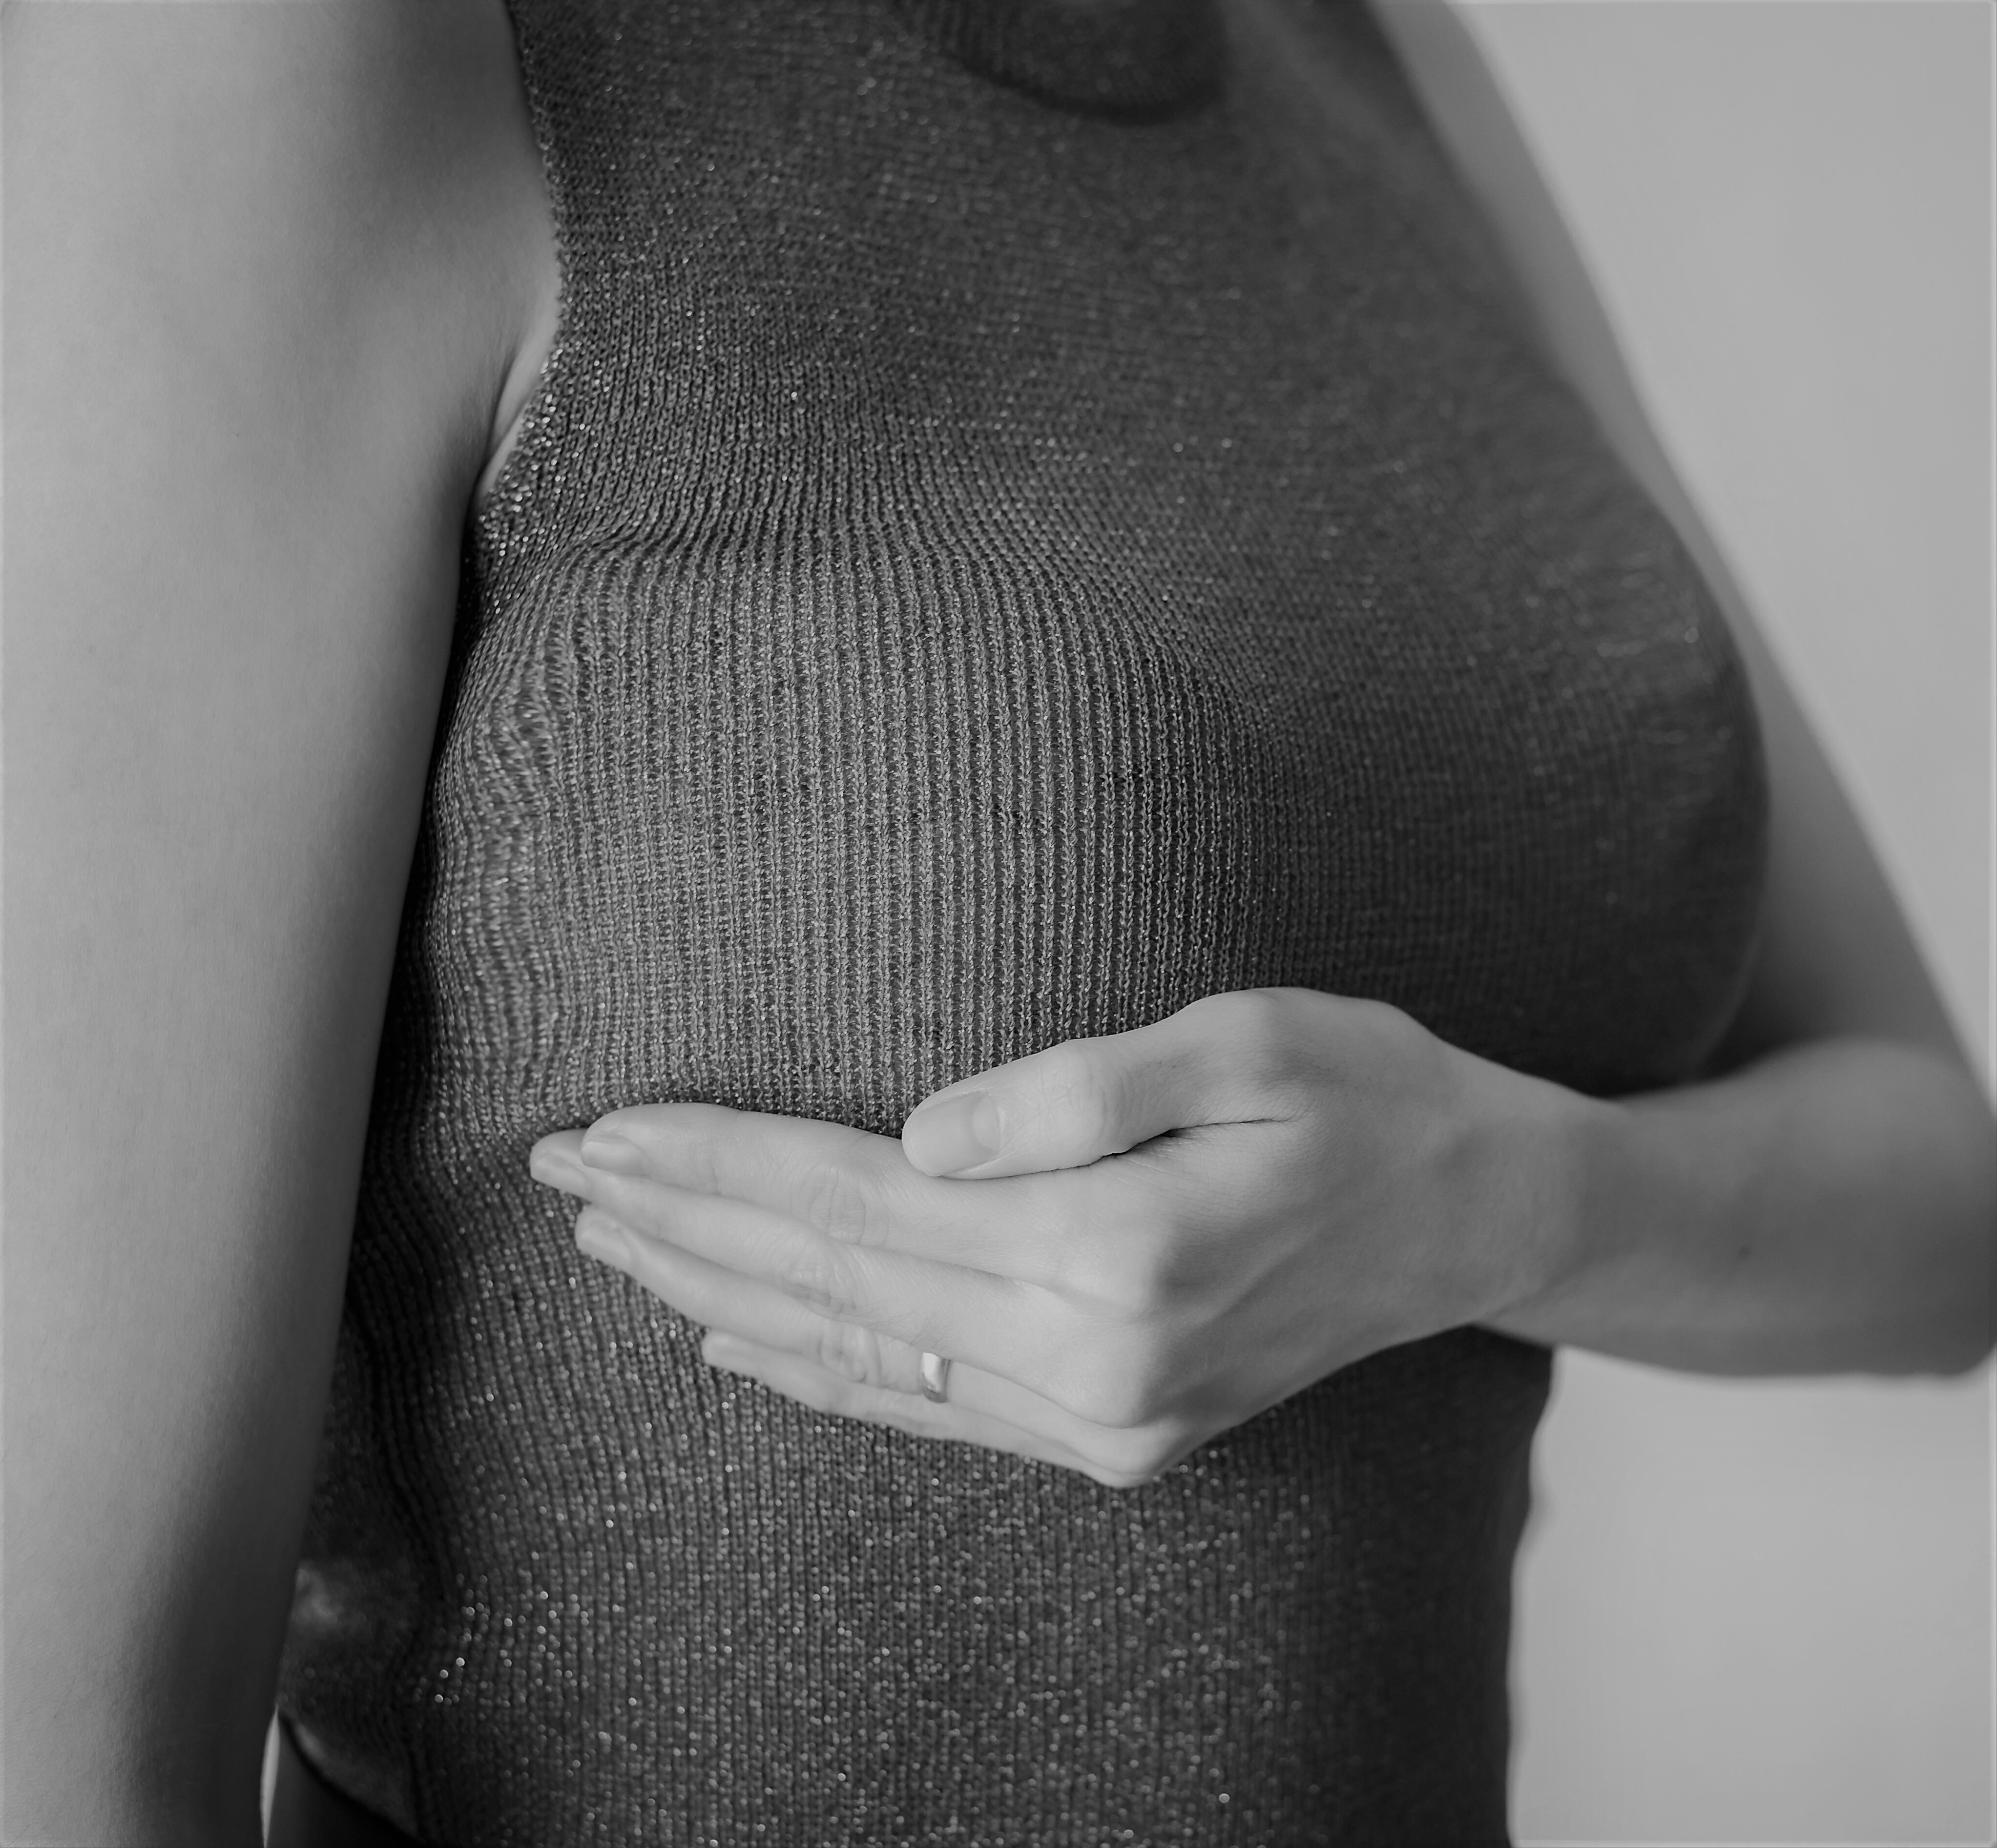 Боль в груди при лактостазе - признаки, симптомы, кто лечит